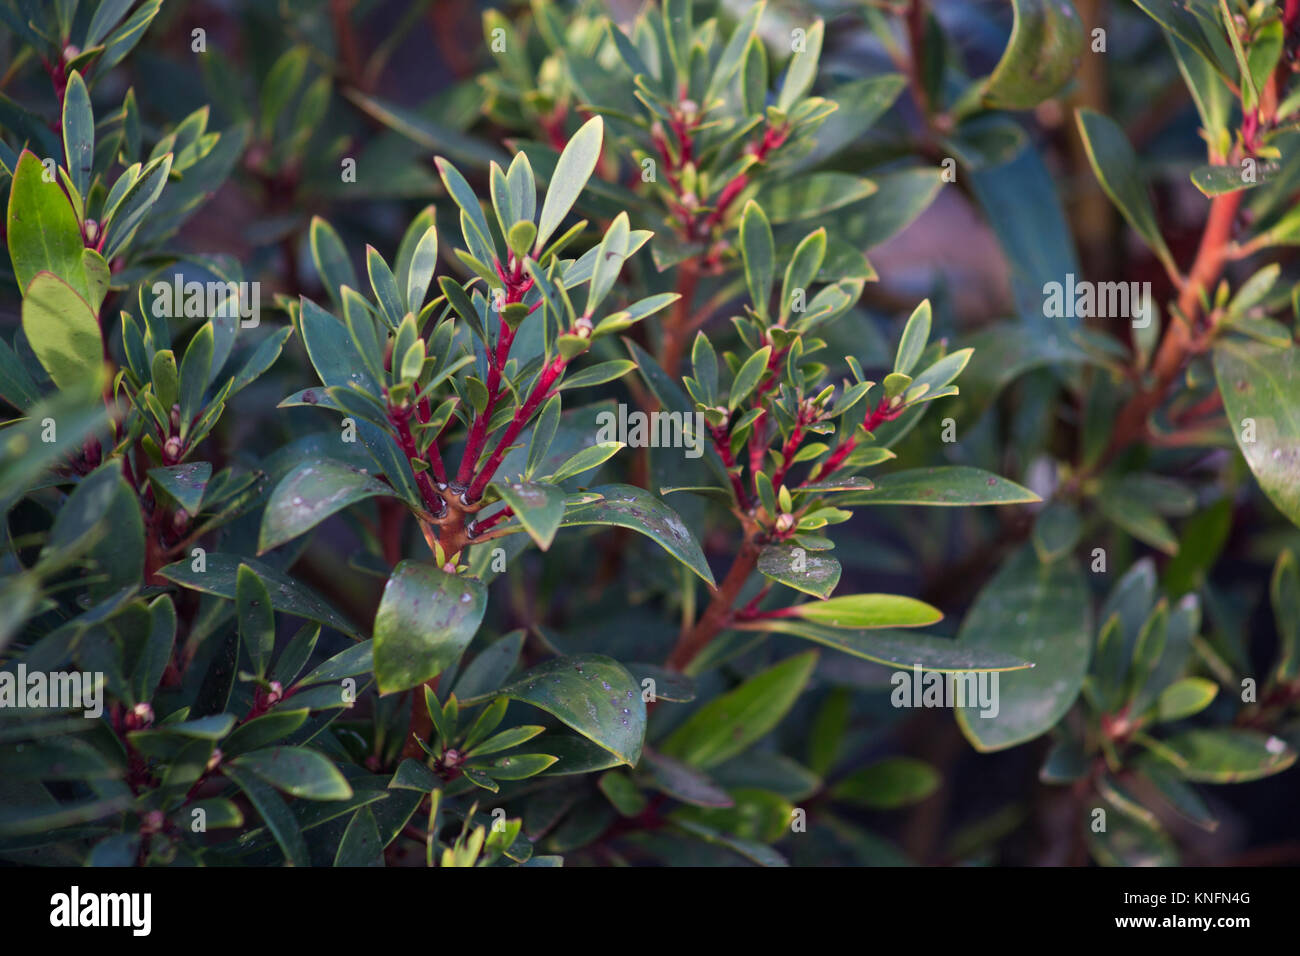 Tasmannia lanceolata Stock Photo